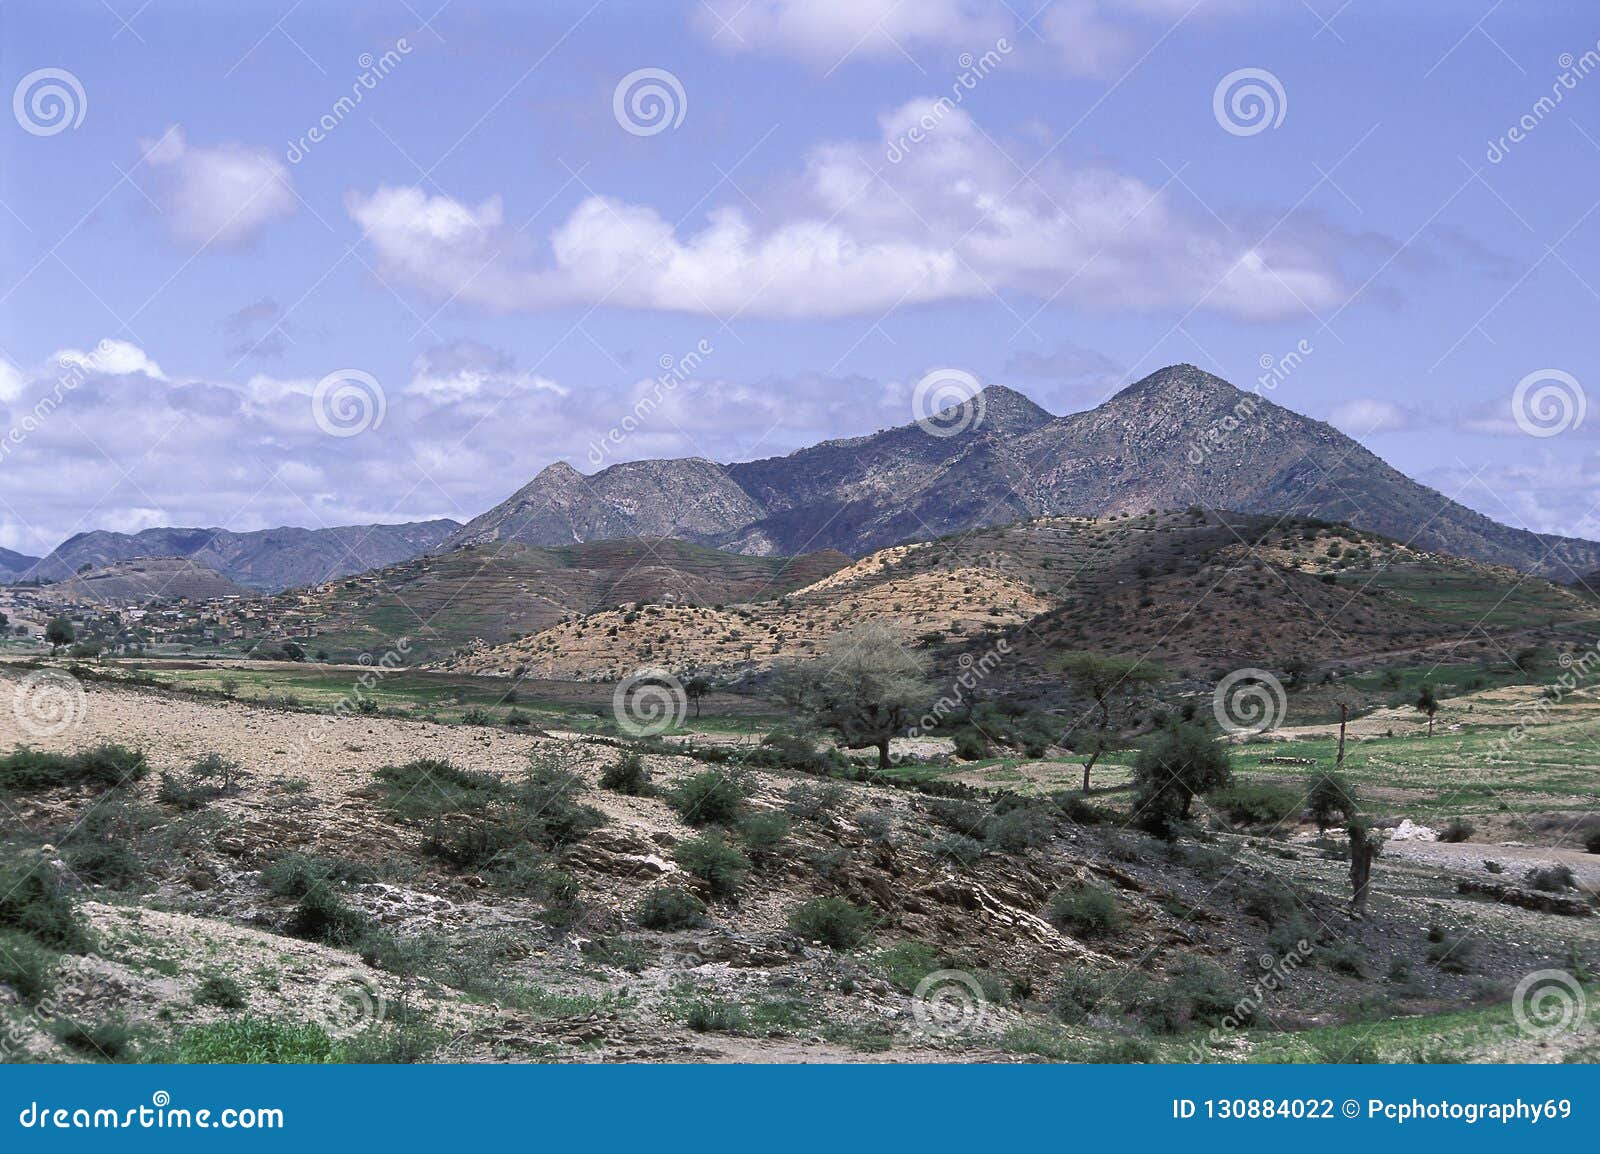 landscape, eritrea